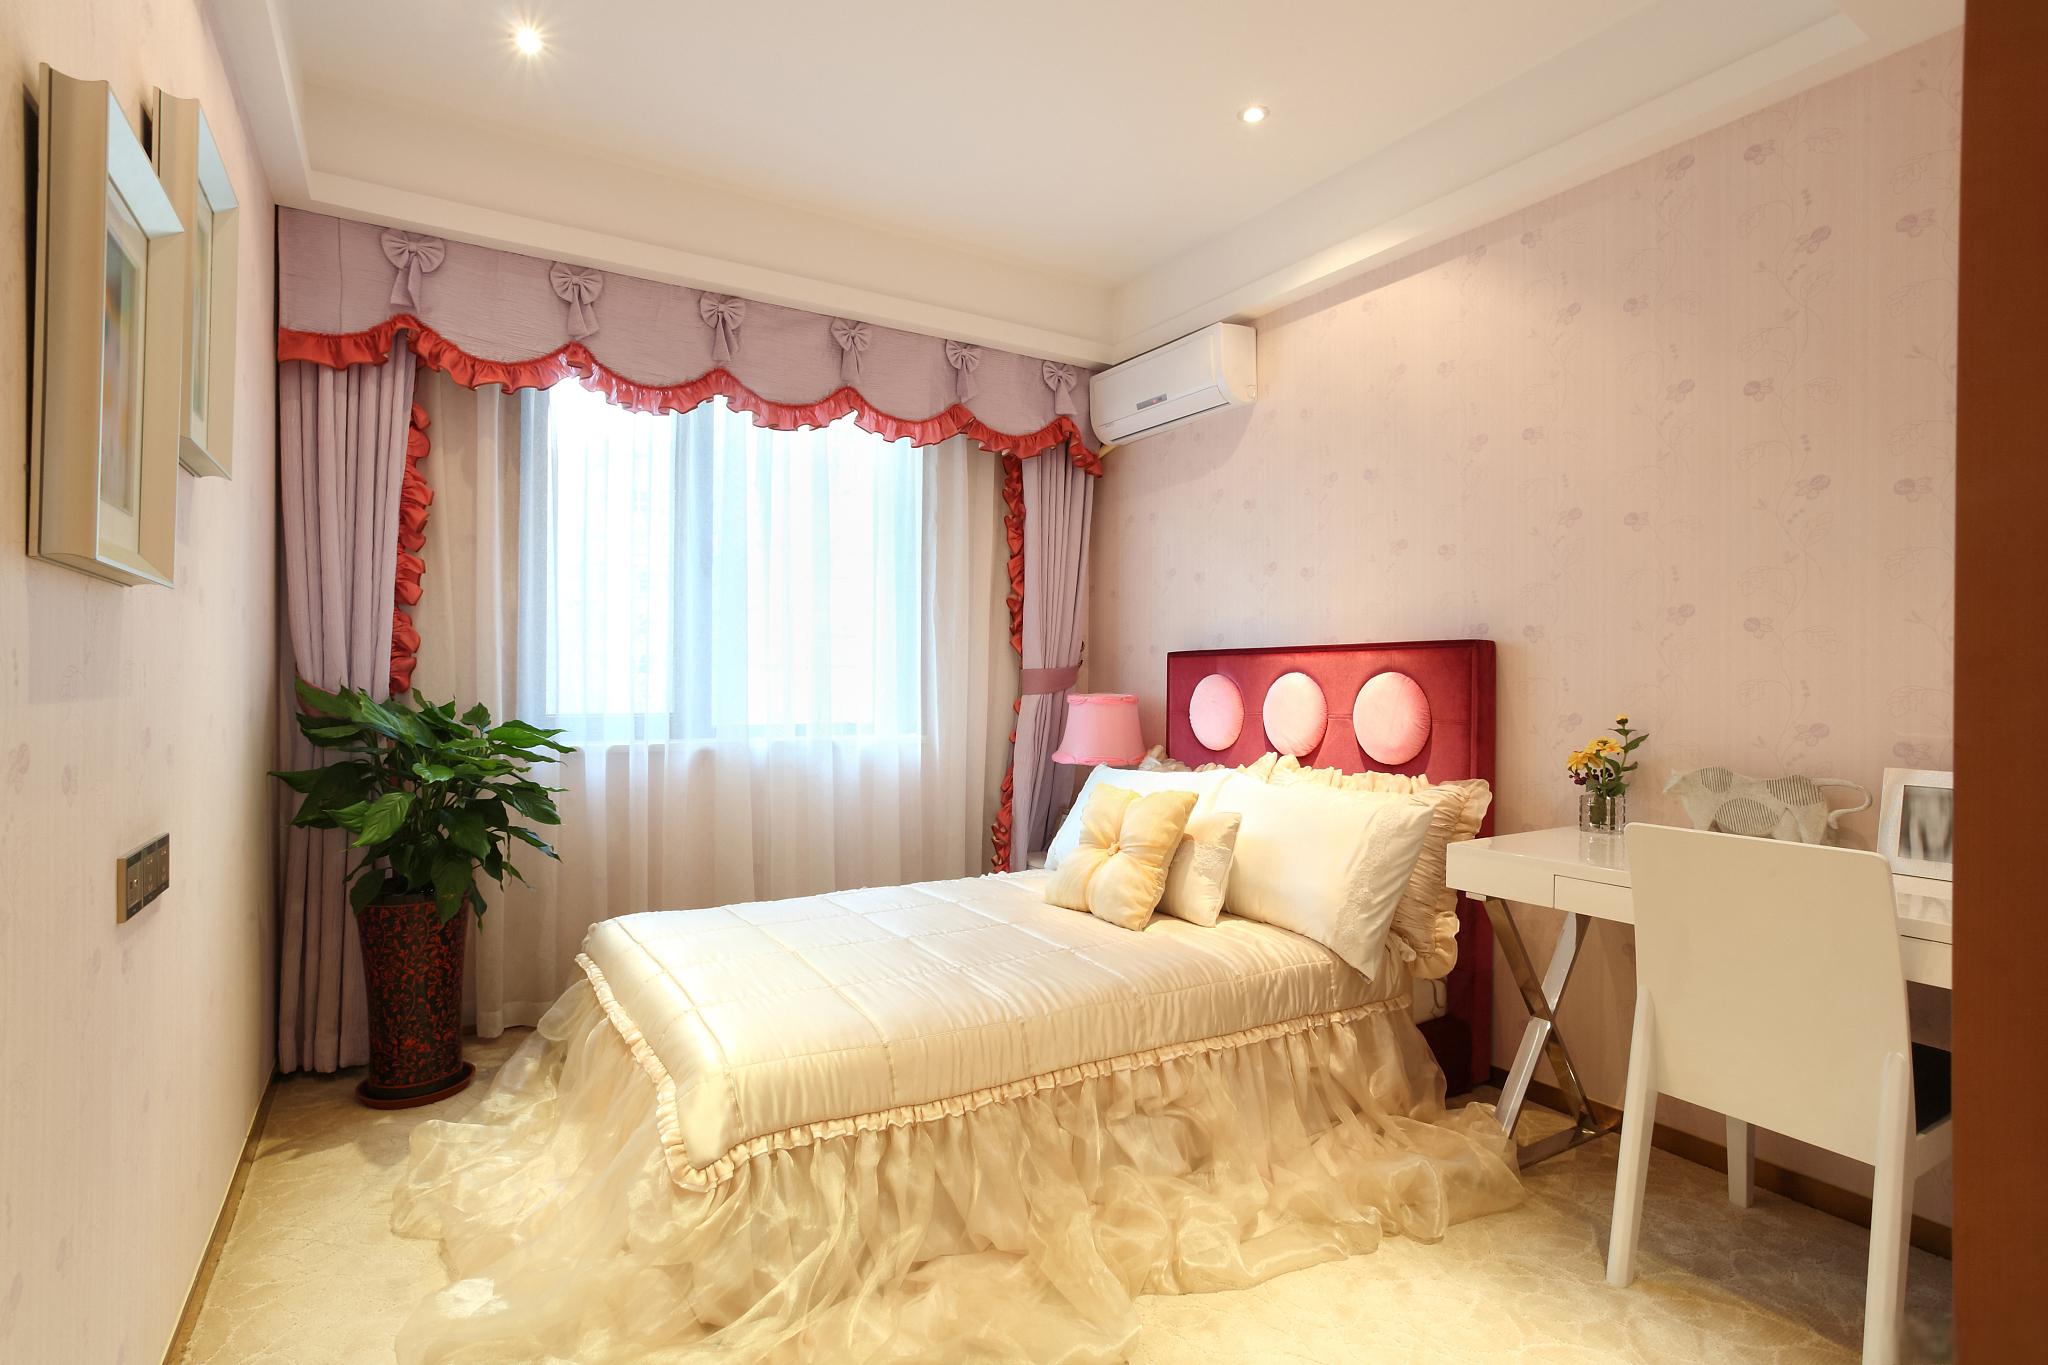 浪漫而温馨的夫妻卧室设计方案 浪漫而温馨的夫妻卧室是一个让夫妻们